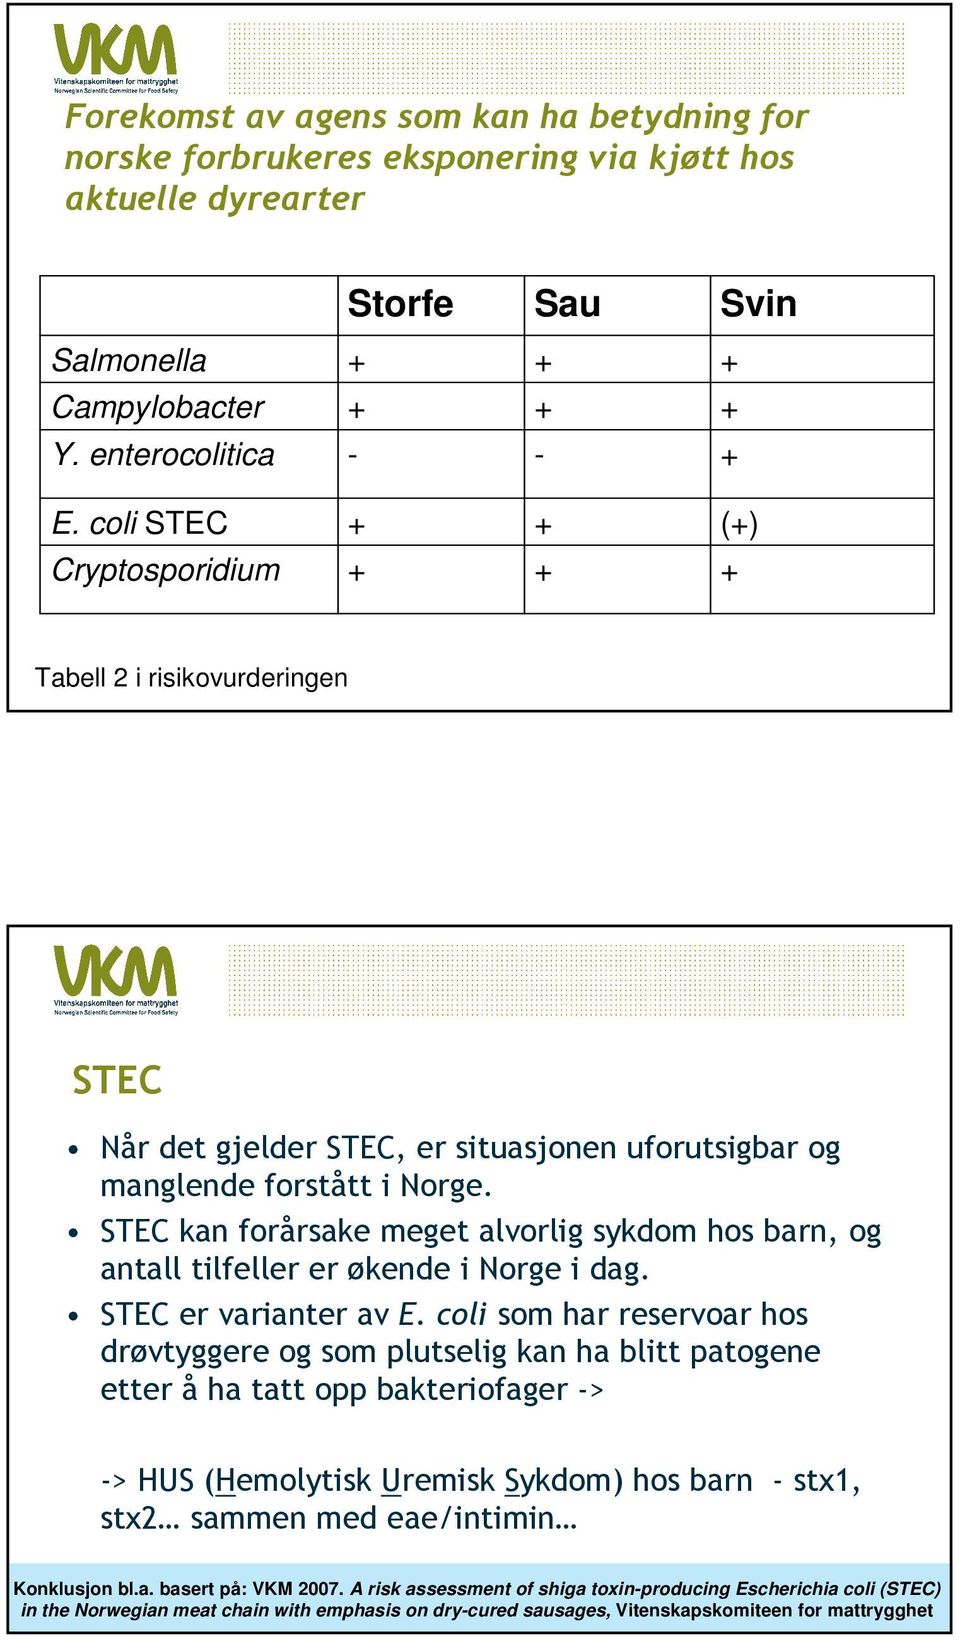 STEC kan forårsake meget alvorlig sykdom hos barn, og antall tilfeller er økende i Norge i dag. STEC er varianter av E.